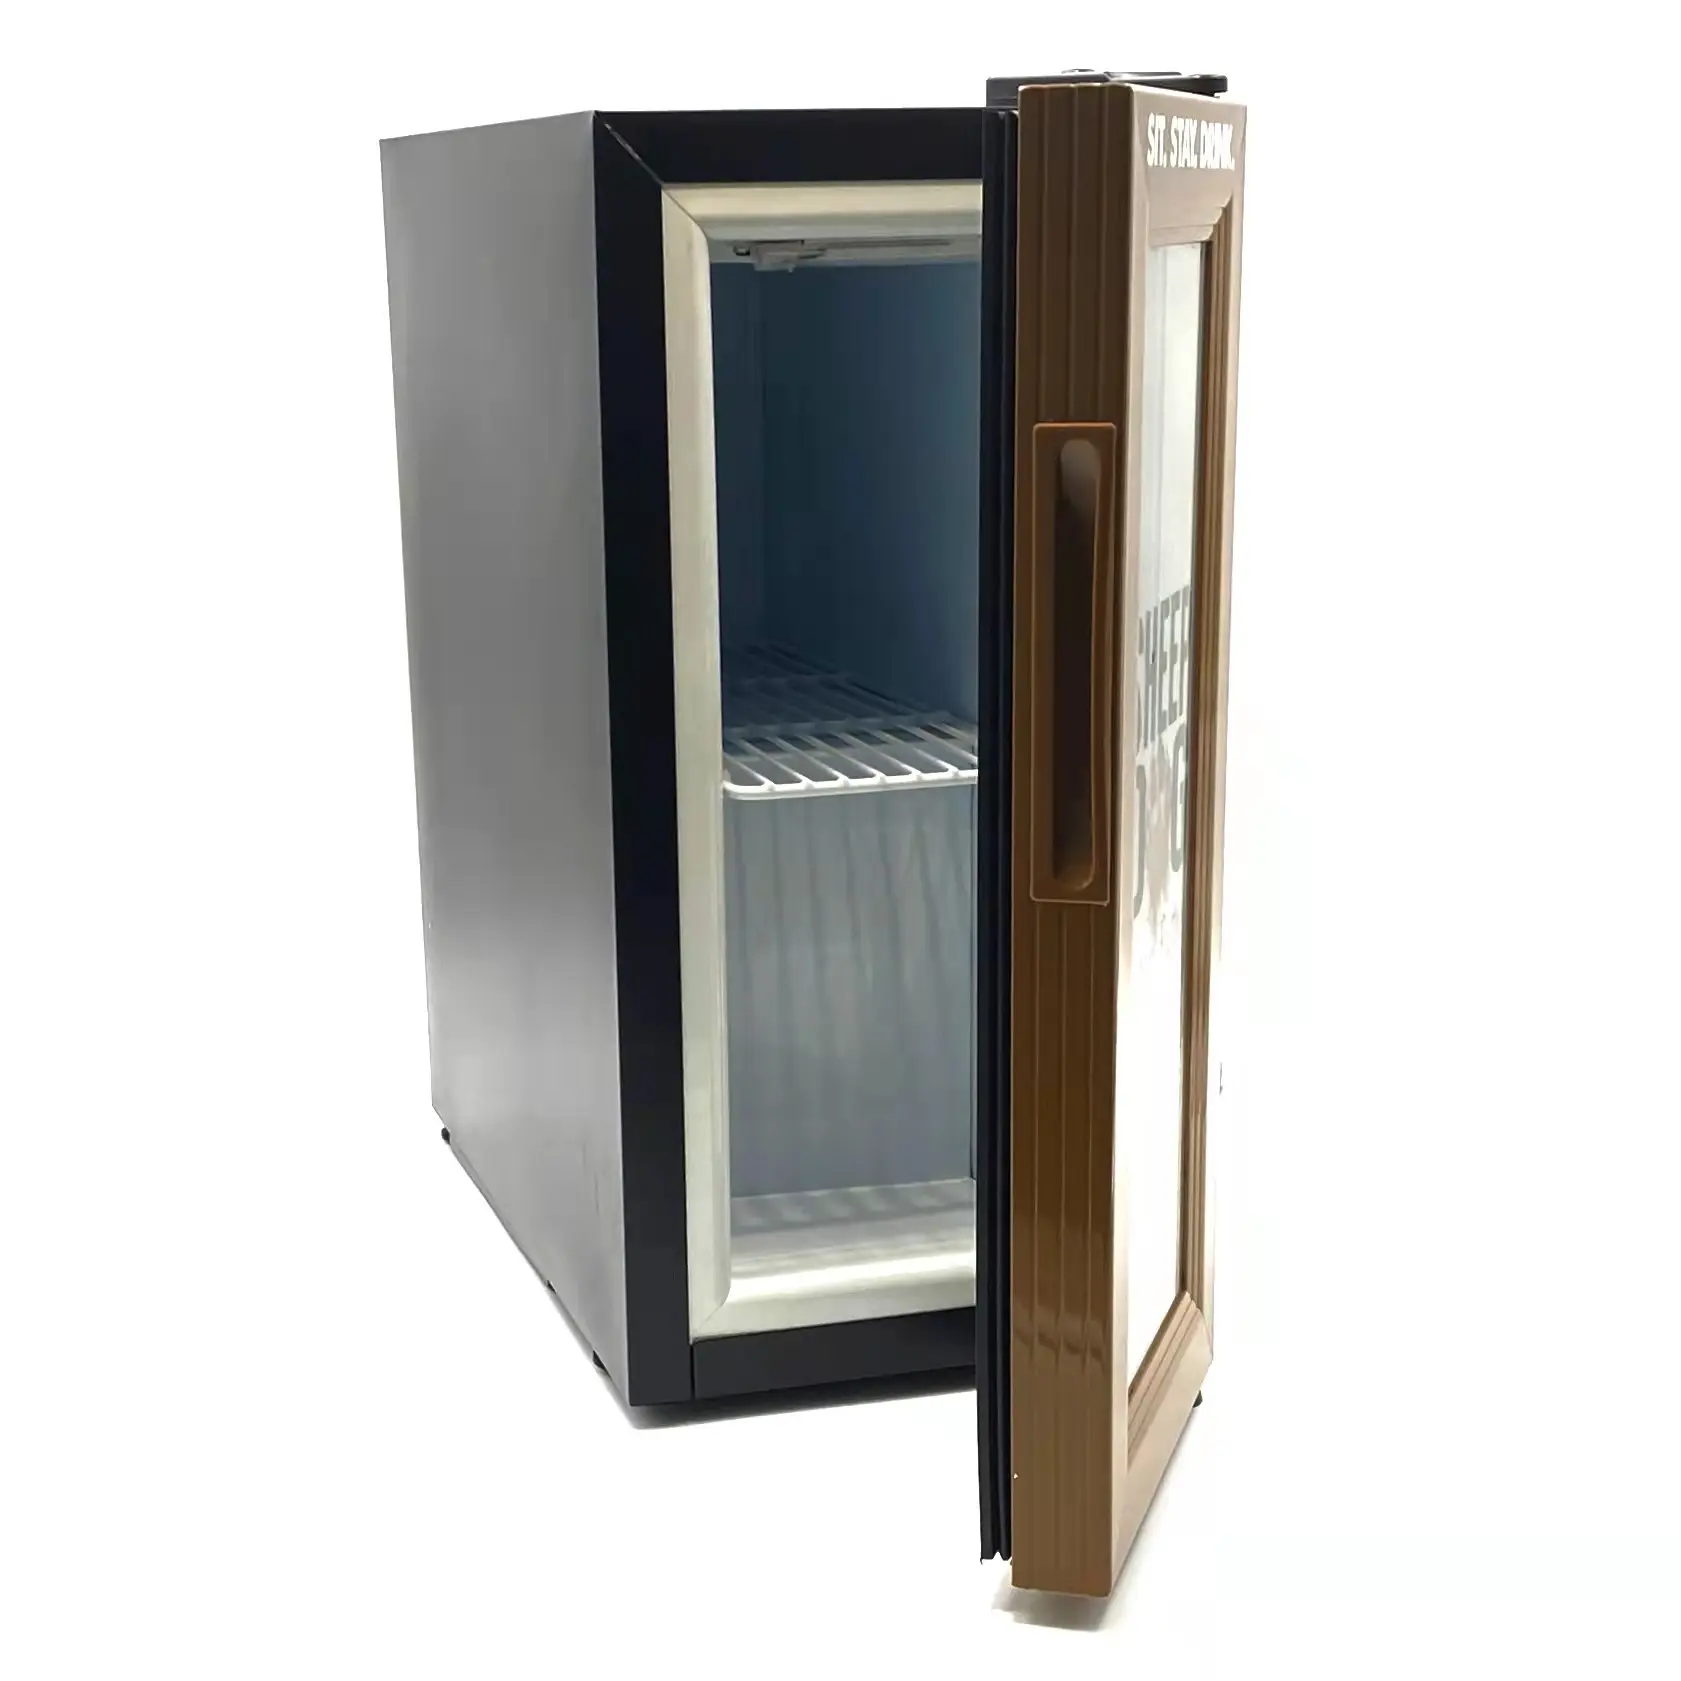 NUELEAD 16 L kleiner Kühlschrank Mini-Kühlschrank Design Glastür Minibar